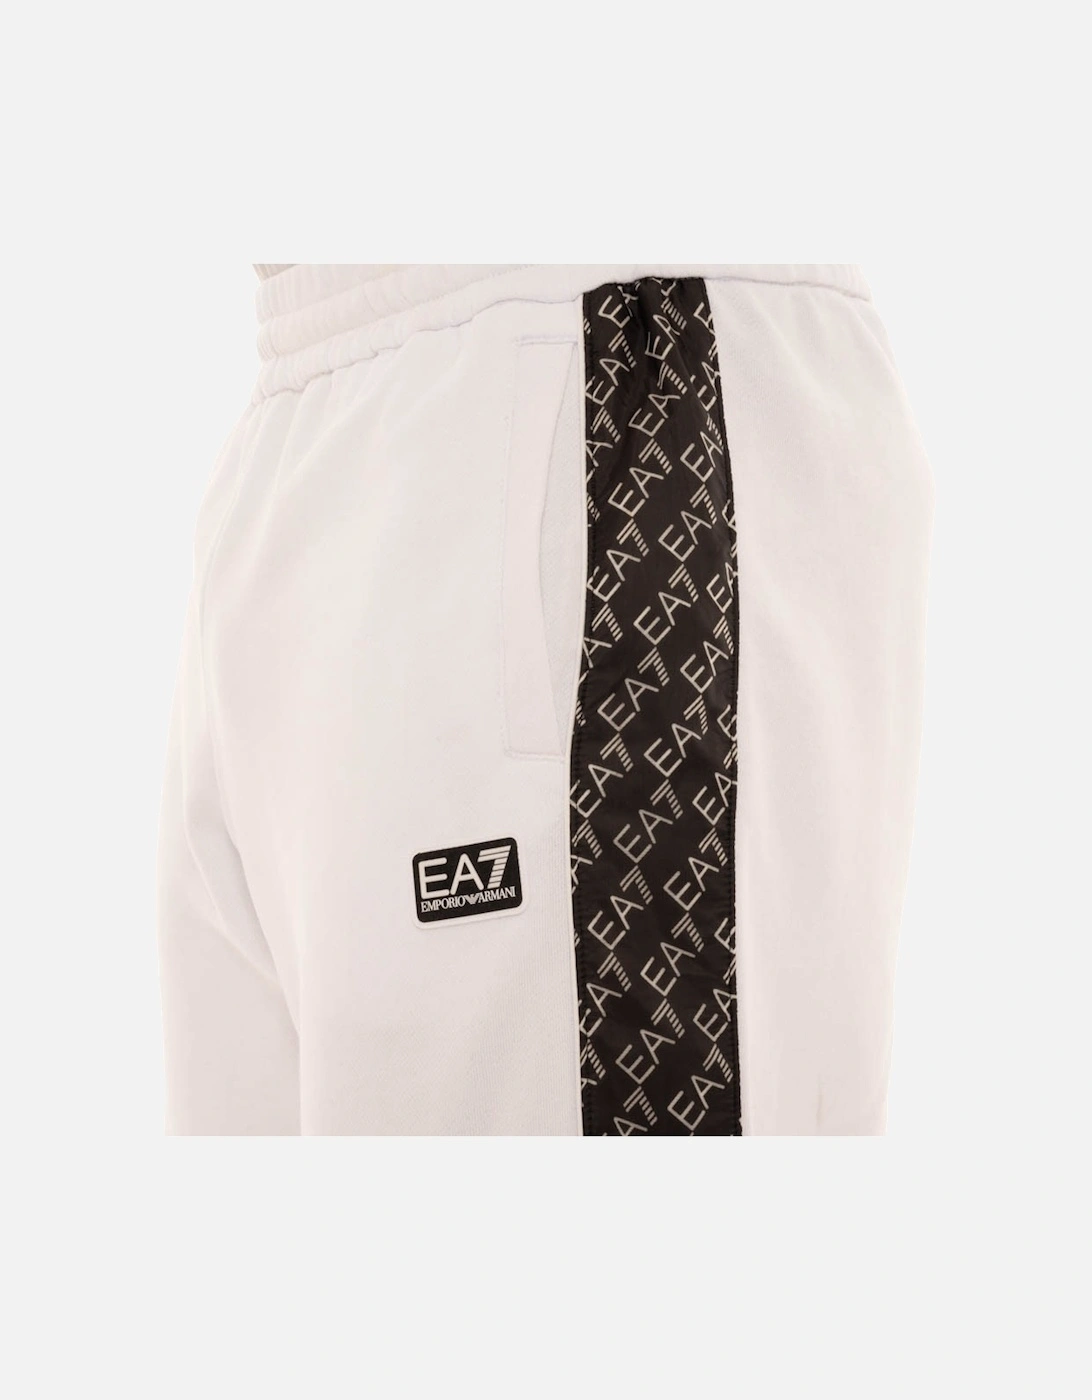 Armani Mens Logo Leg Jersey Shorts (White)